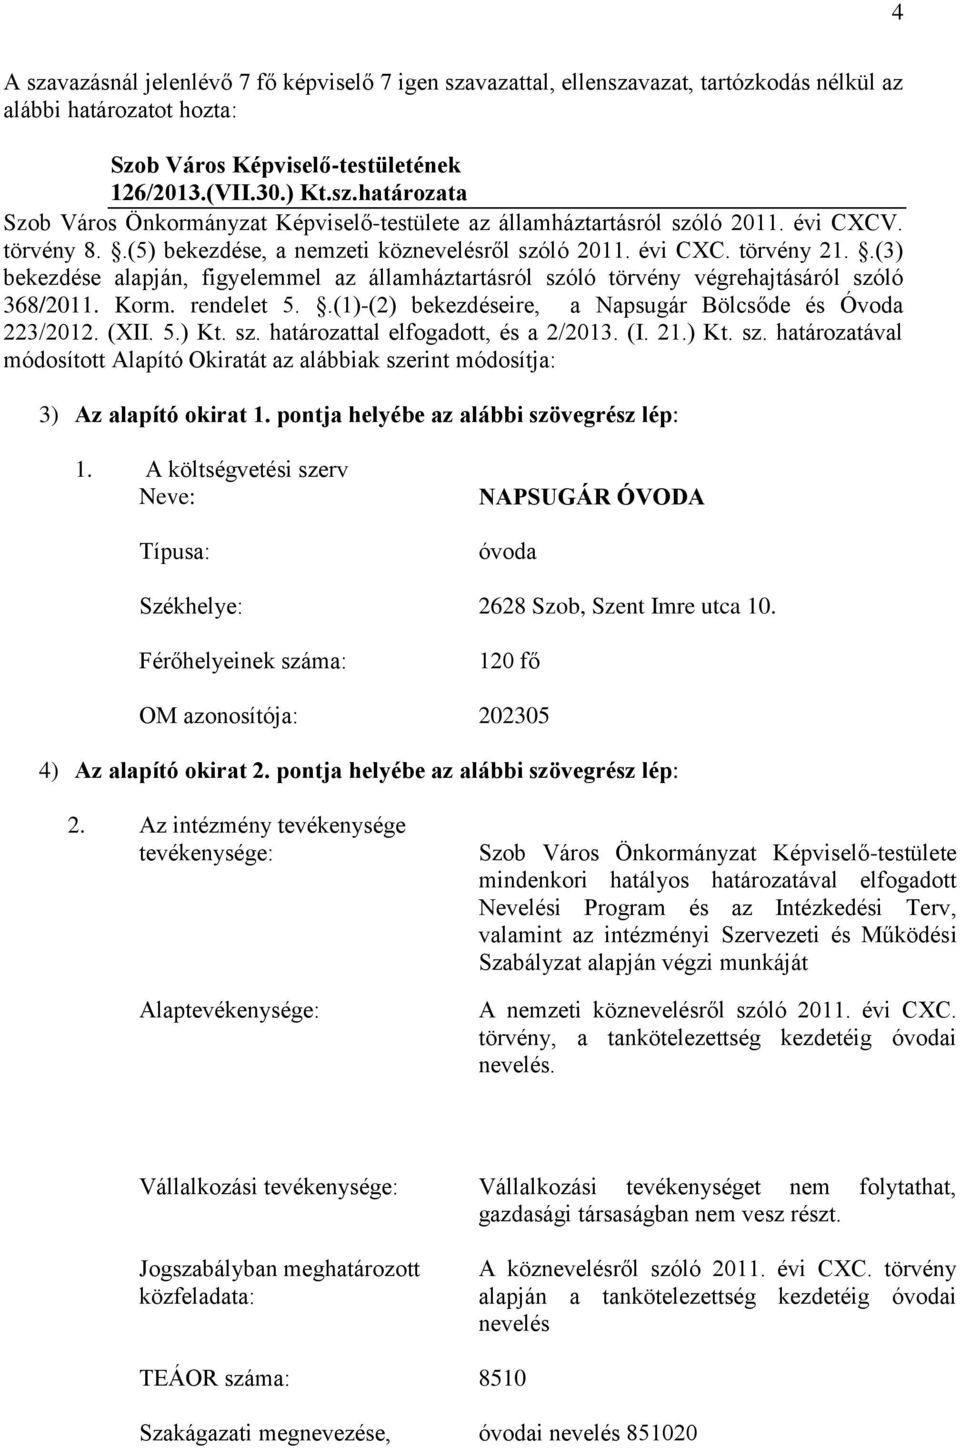 rendelet 5..(1)-(2) bekezdéseire, a Napsugár Bölcsőde és Óvoda 223/2012. (XII. 5.) Kt. sz. határozattal elfogadott, és a 2/2013. (I. 21.) Kt. sz. határozatával módosított Alapító Okiratát az alábbiak szerint módosítja: 3) Az alapító okirat 1.